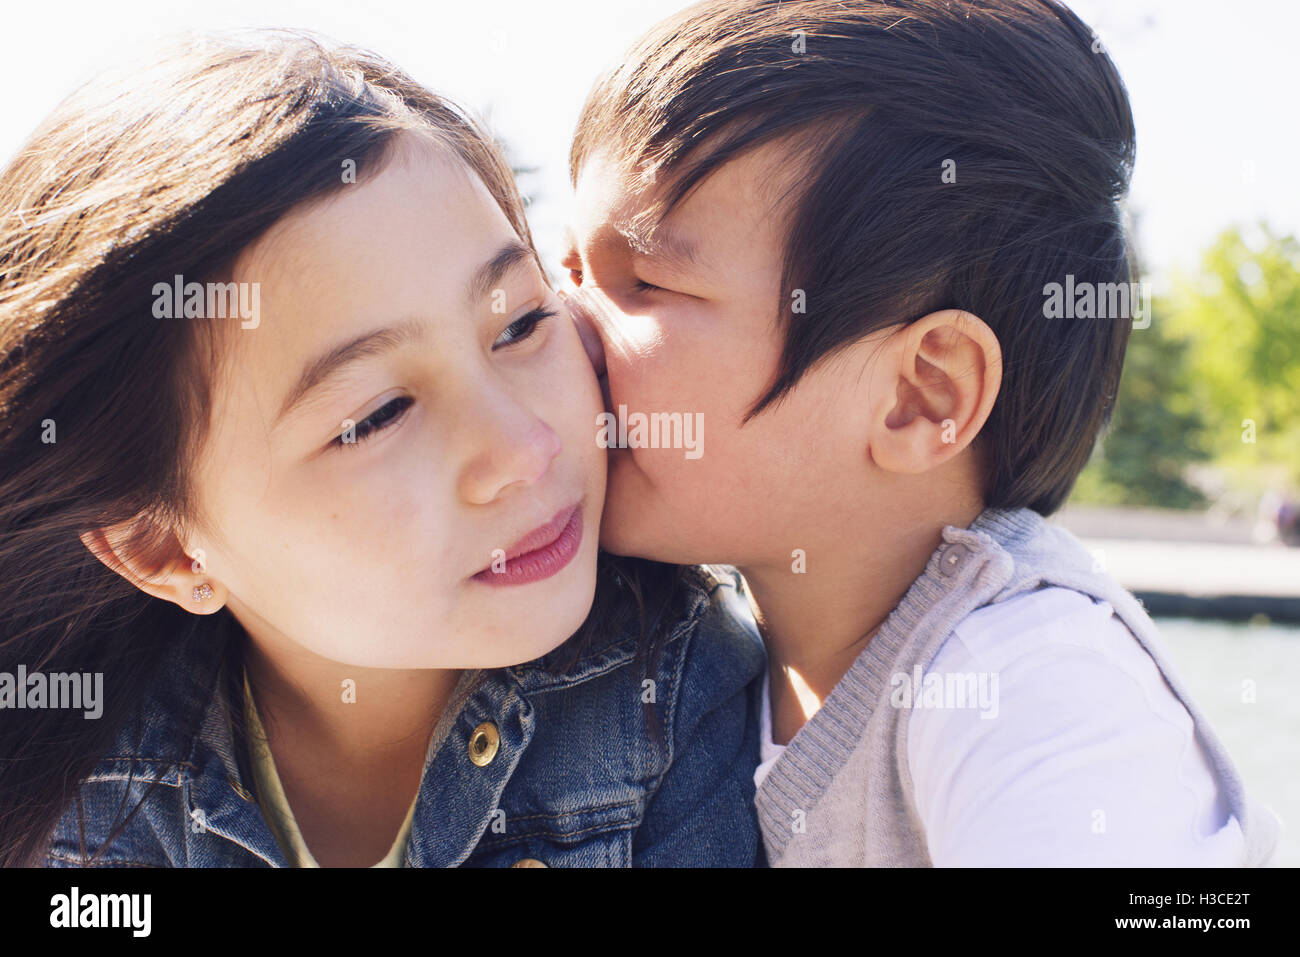 Petit garçon embrassant la joue de sa sœur Banque D'Images